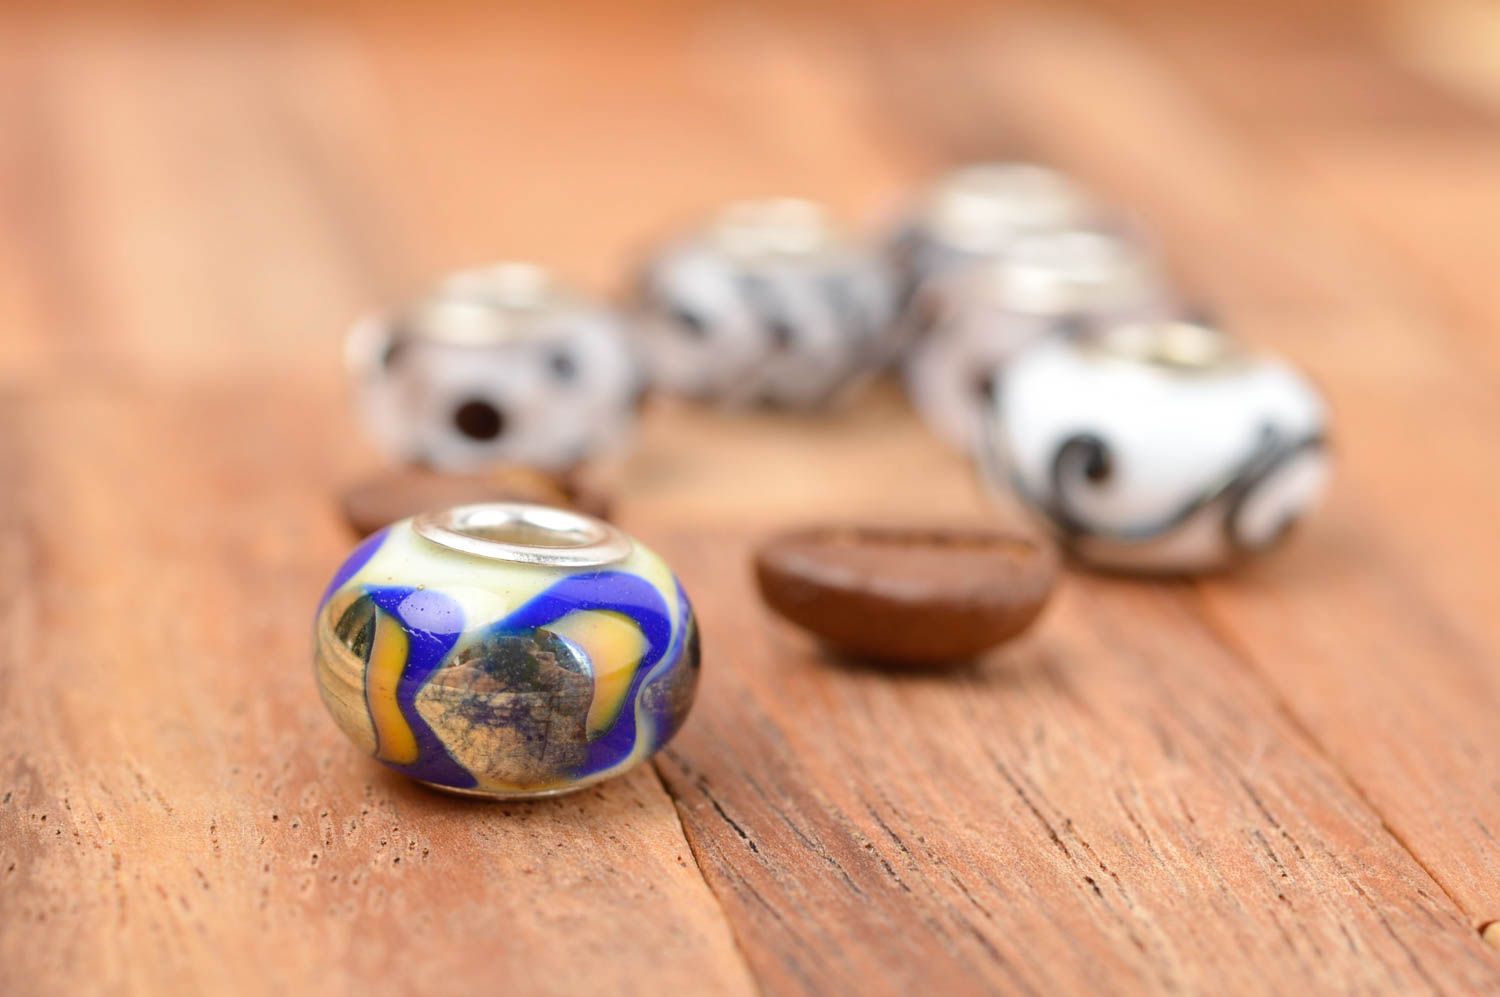 Stylish handmade glass bead jewelry making ideas art and craft small gifts photo 1